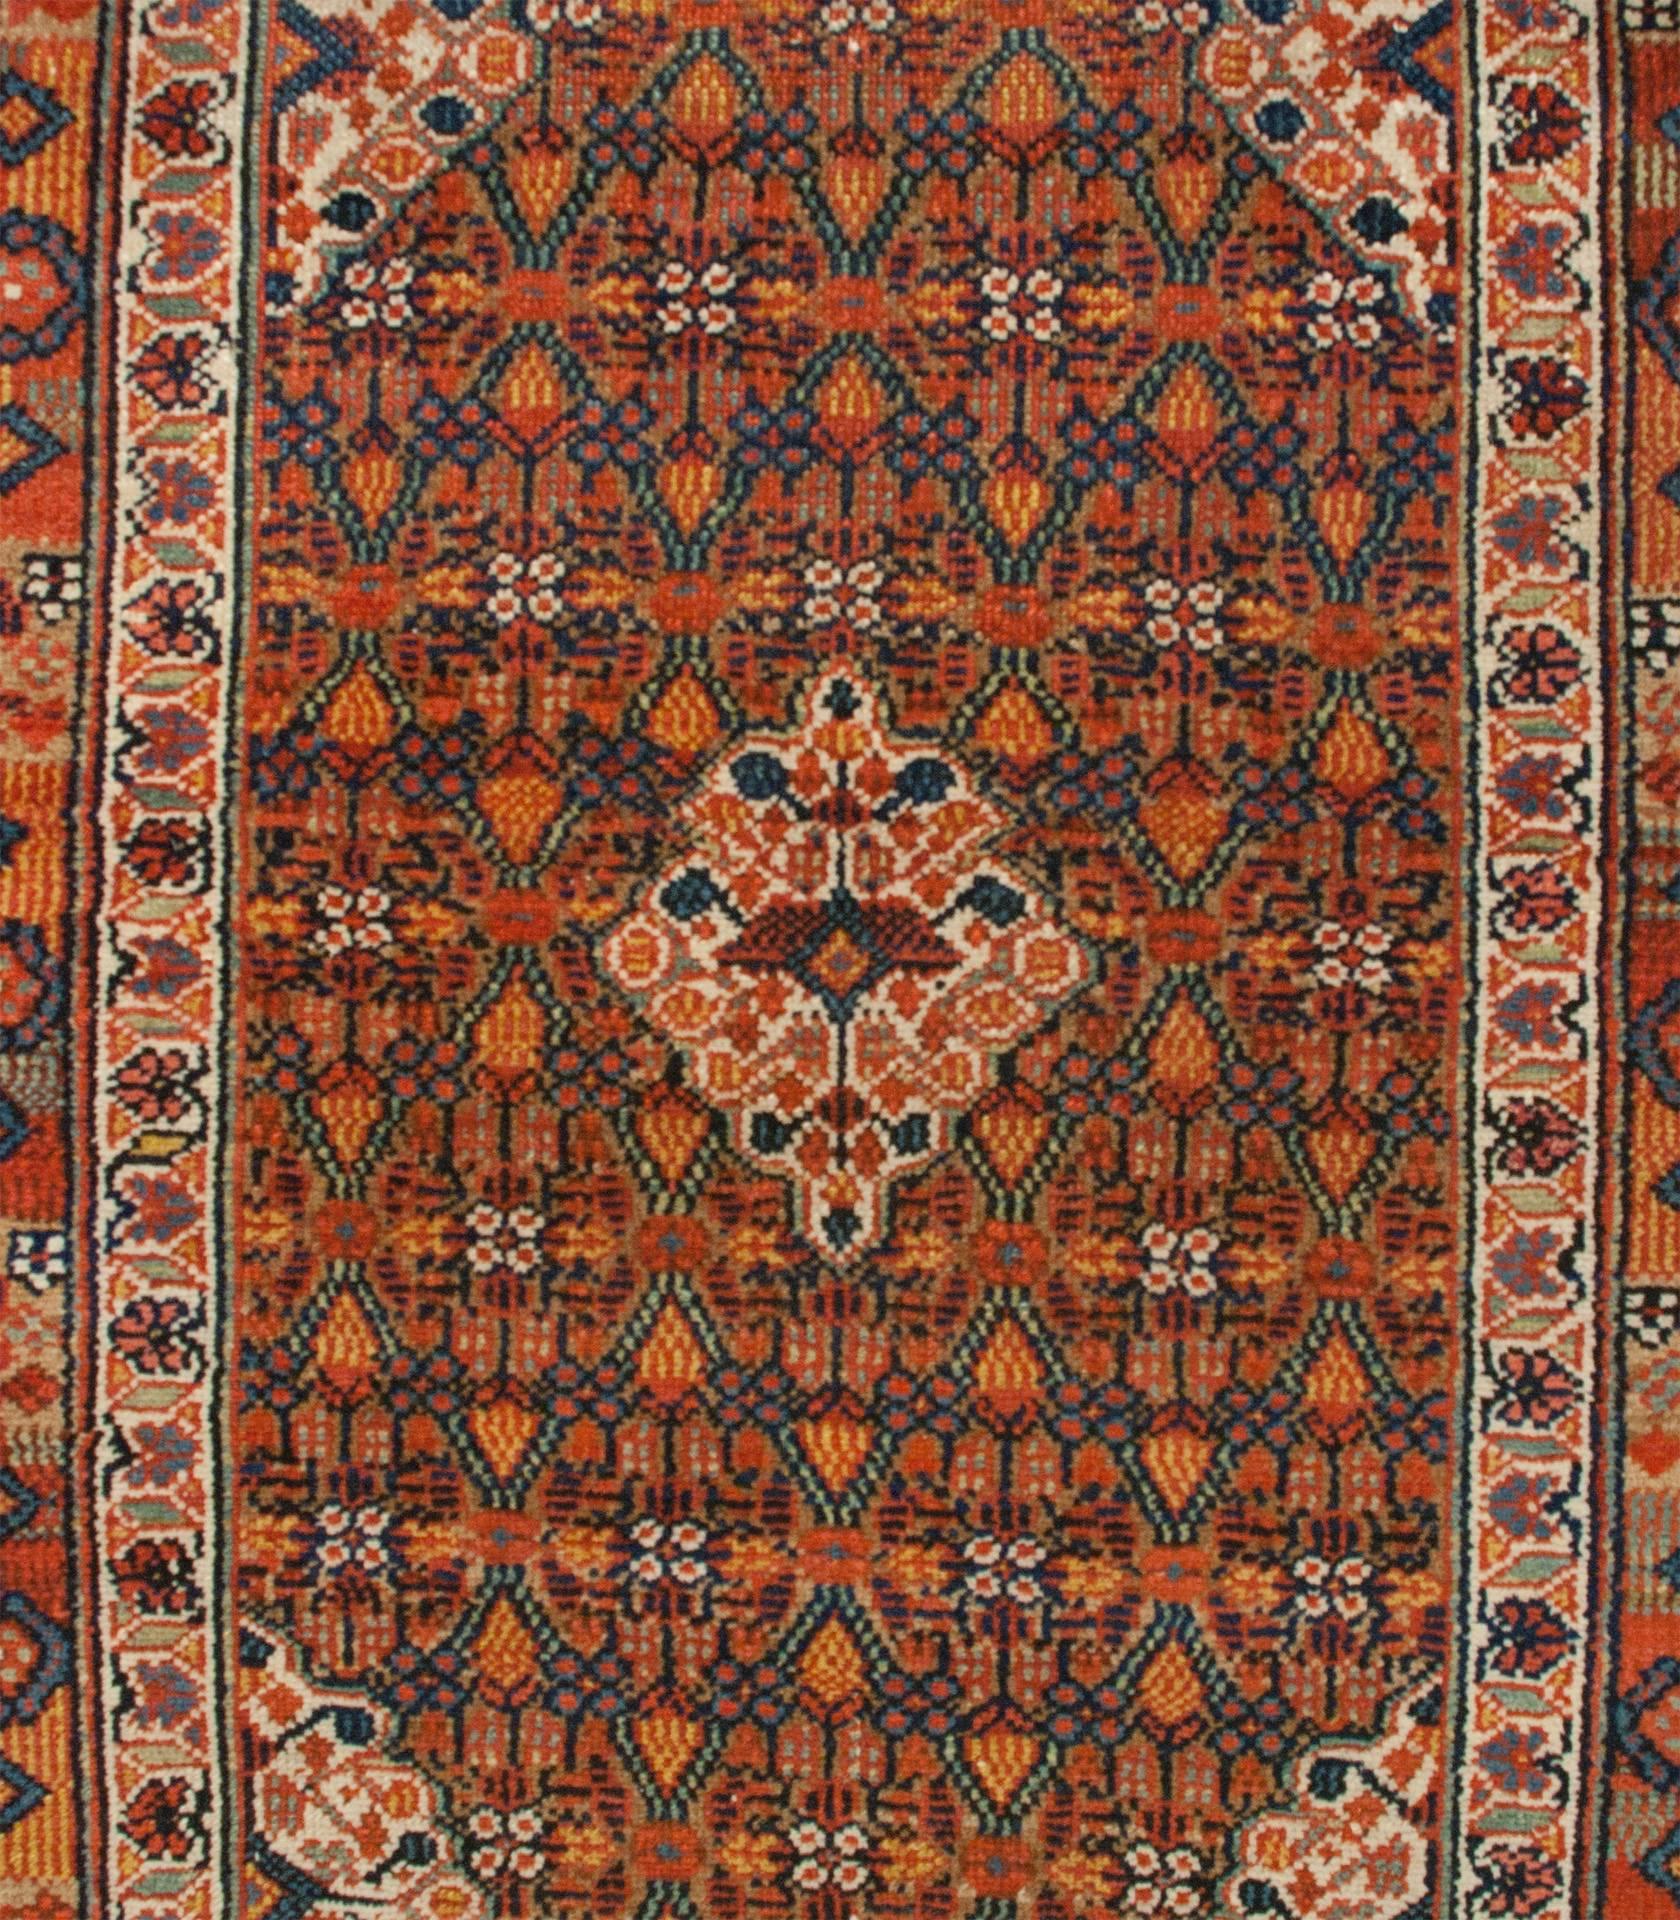 Étonnant tapis en poil de chameau Serab perse du XIXe siècle, avec un champ en treillis multicolore intensément tissé, entouré d'une bordure florale contrastée et d'une autre bordure géométrique multicolore, le tout entouré d'une bordure en poil de